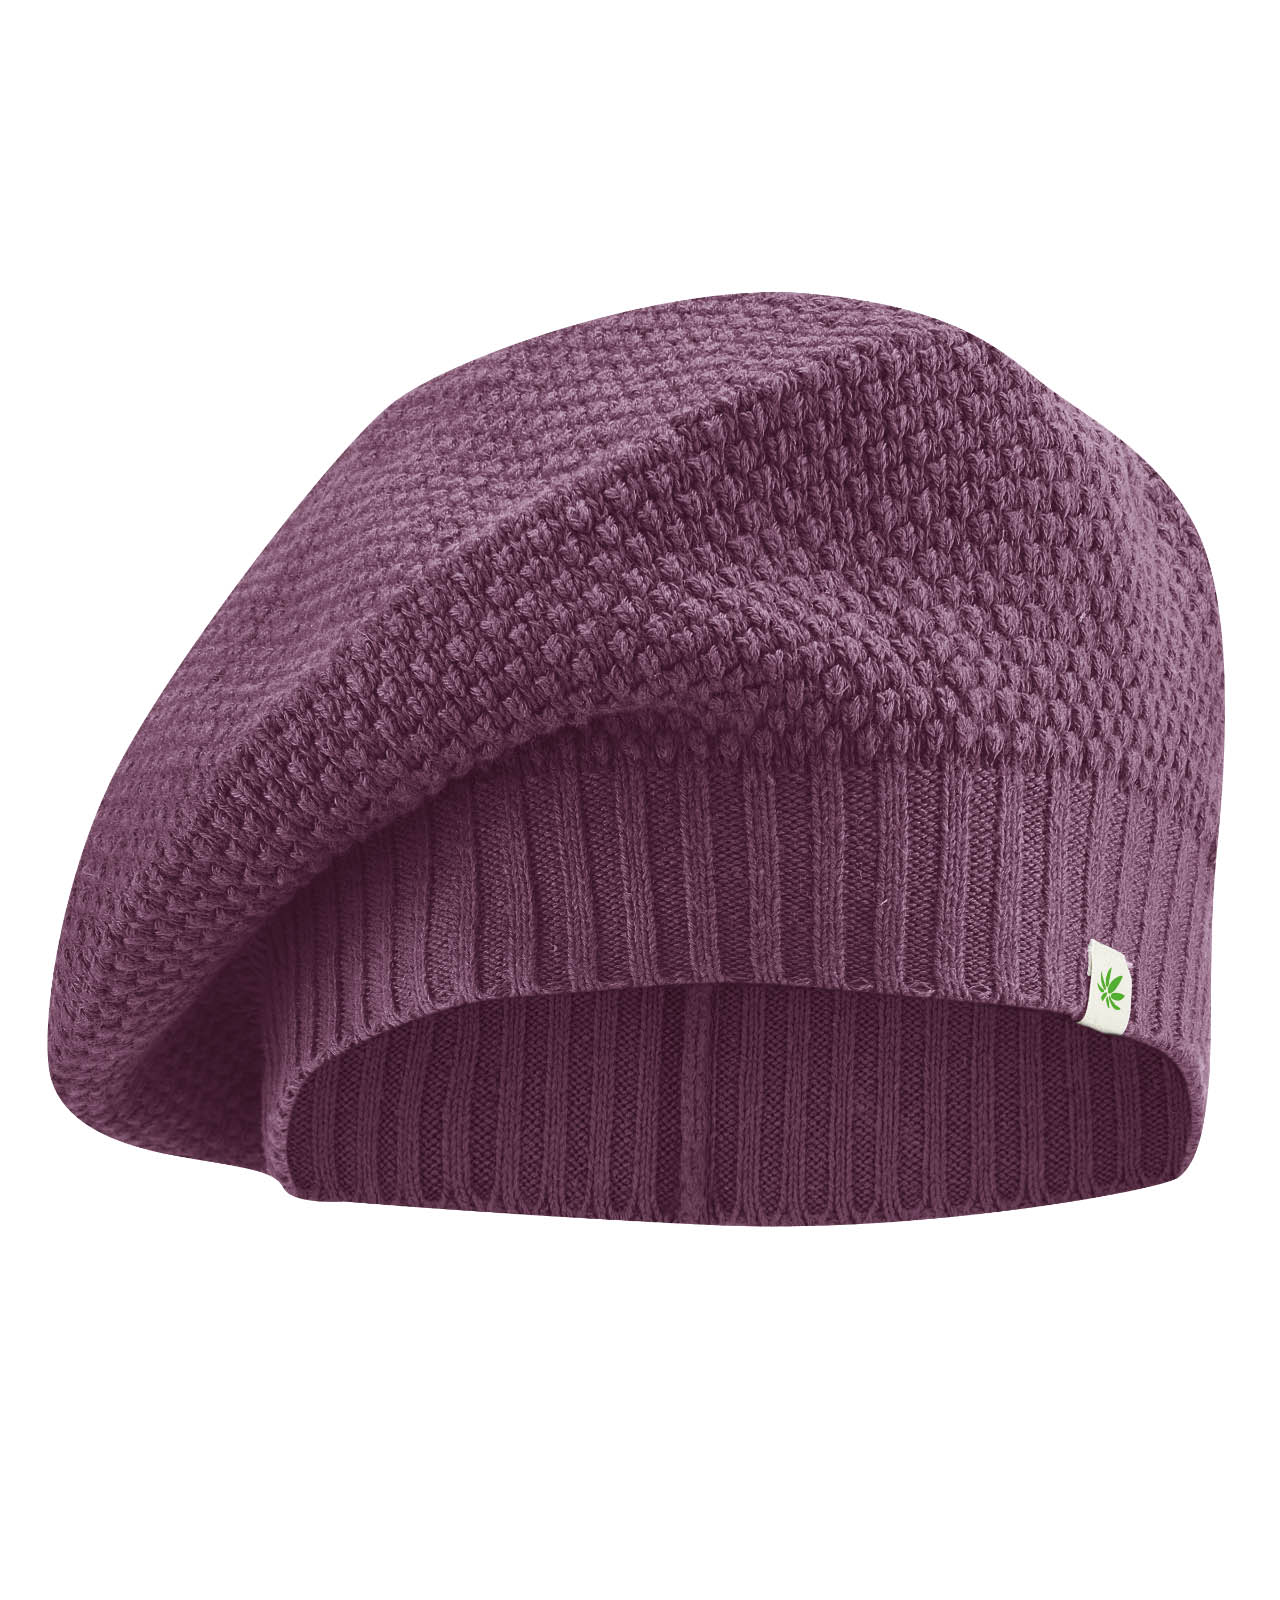 bonnet éthique femme LZ412_purple